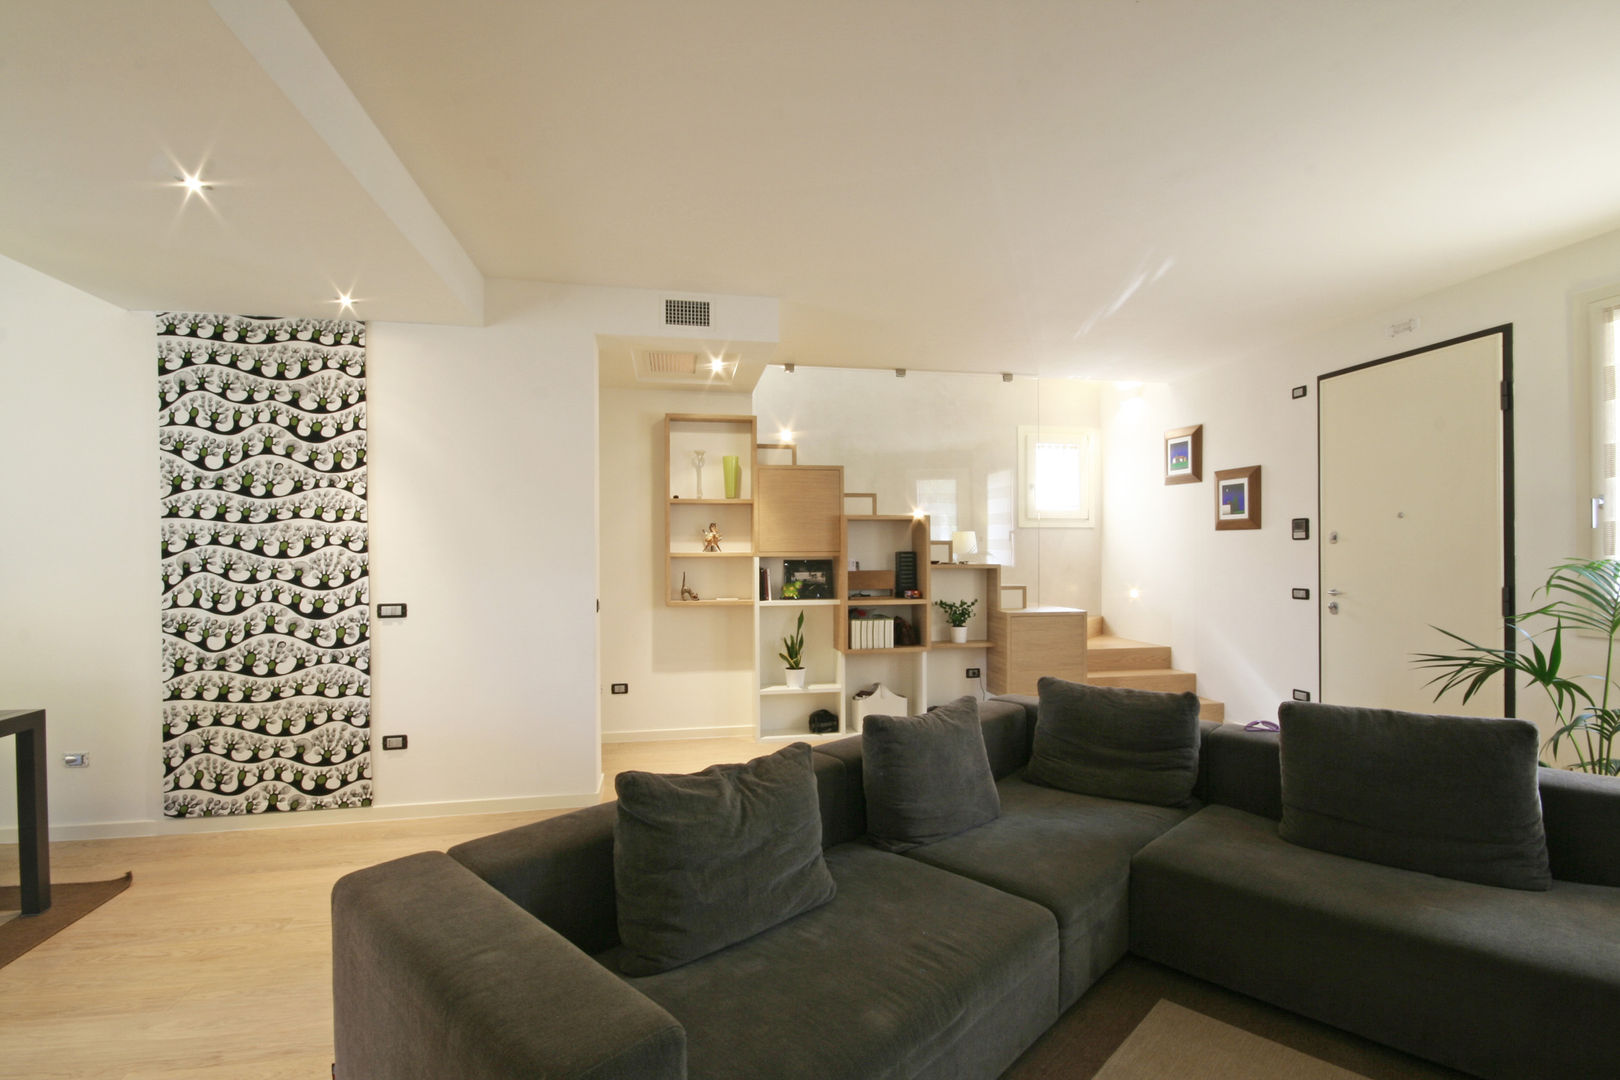 House in Marostica, Diego Gnoato Architect Diego Gnoato Architect ห้องนั่งเล่น ชั้นวางทีวีและตู้วางทีวี